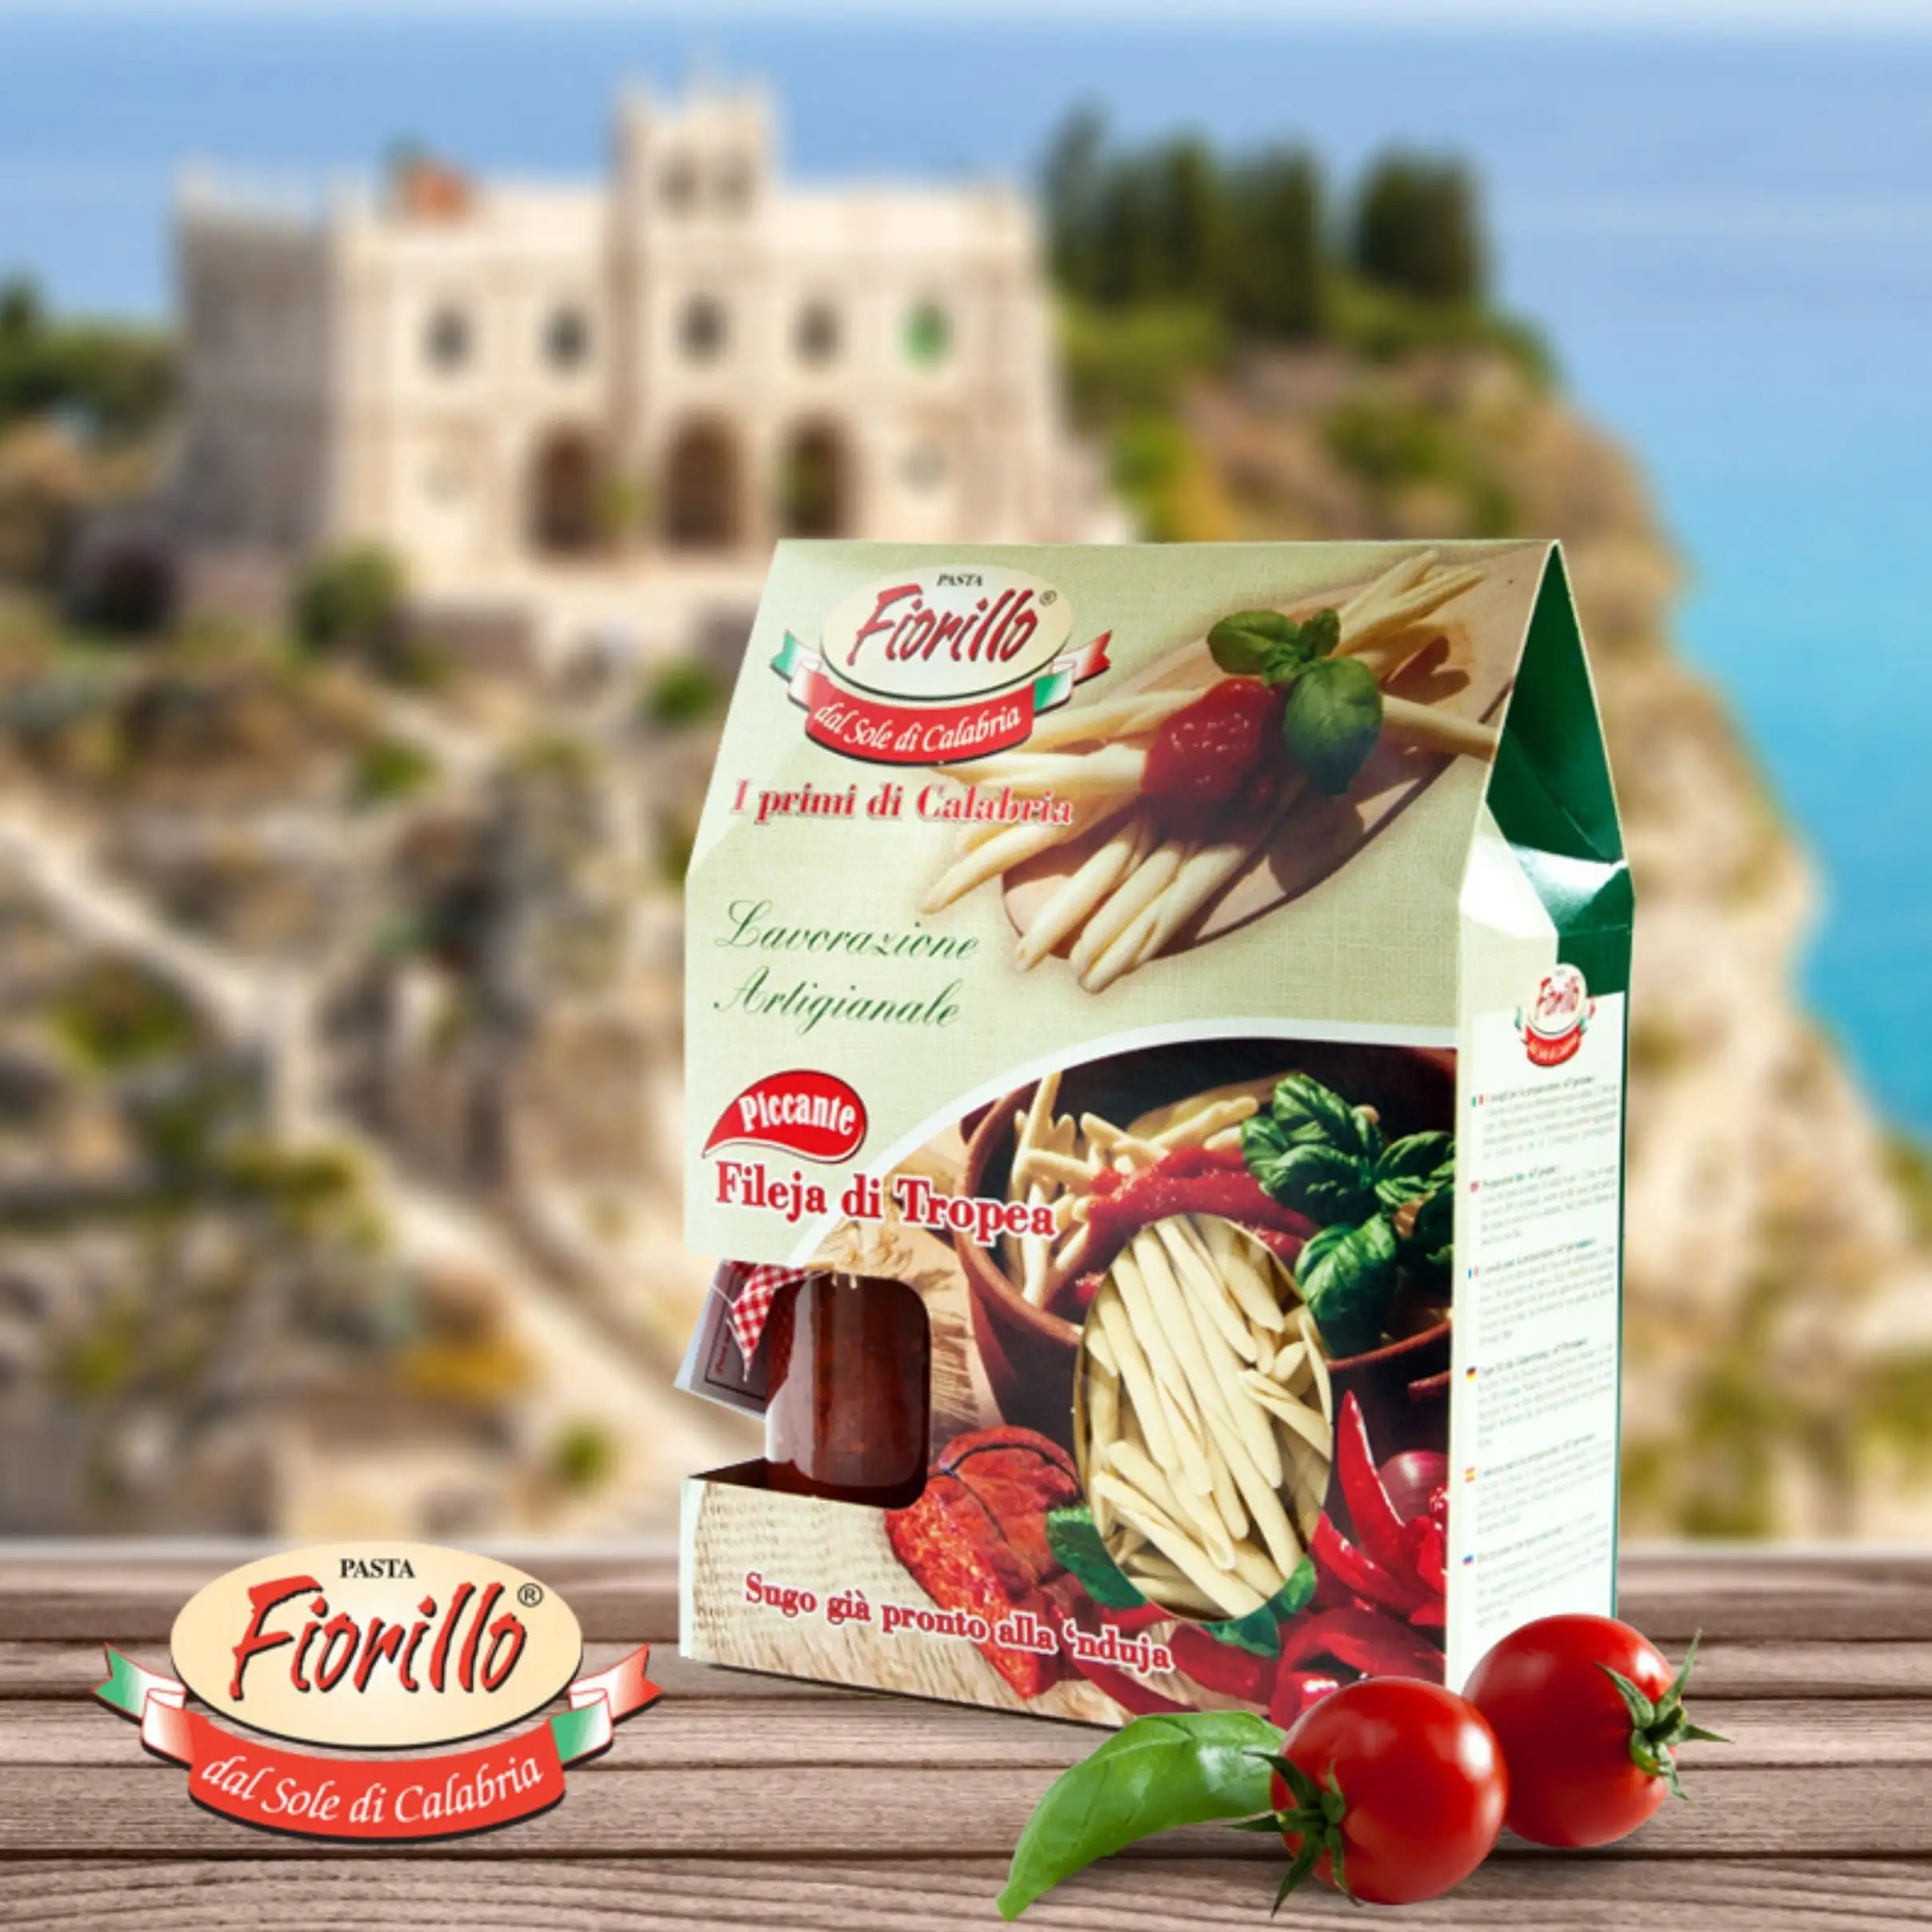 새로운 이탈리아 파스타 선물 상자-길고 짧은 듀럼 밀 파스타-100% 이탈리아에서 만든 에센스 by Pasticio Fiorillo